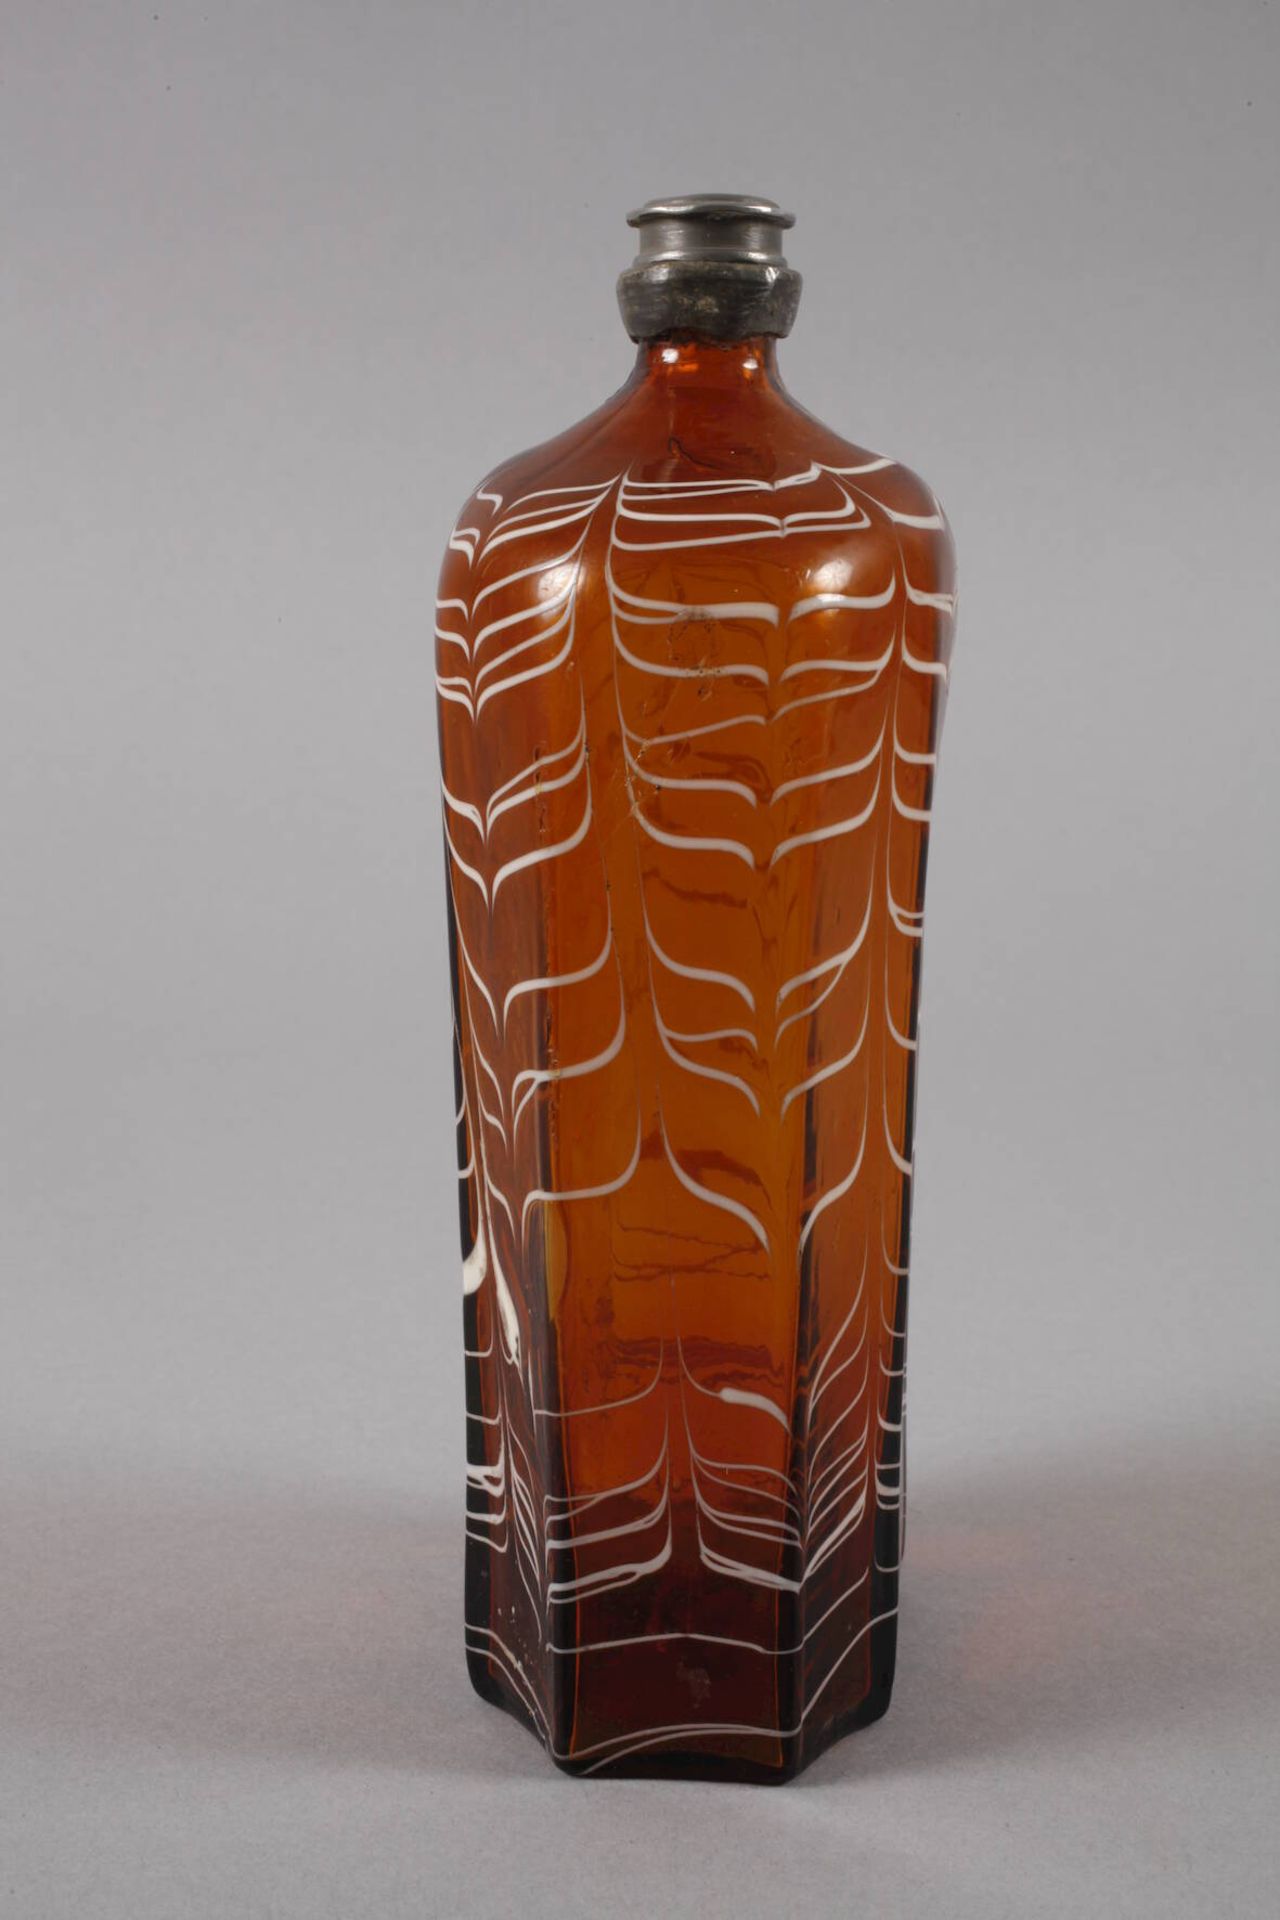 Alpenländische Schnapsflasche18. Jh., honigbraunes Glas, blasiger Abriss, hexagonal facettiert, - Bild 3 aus 6